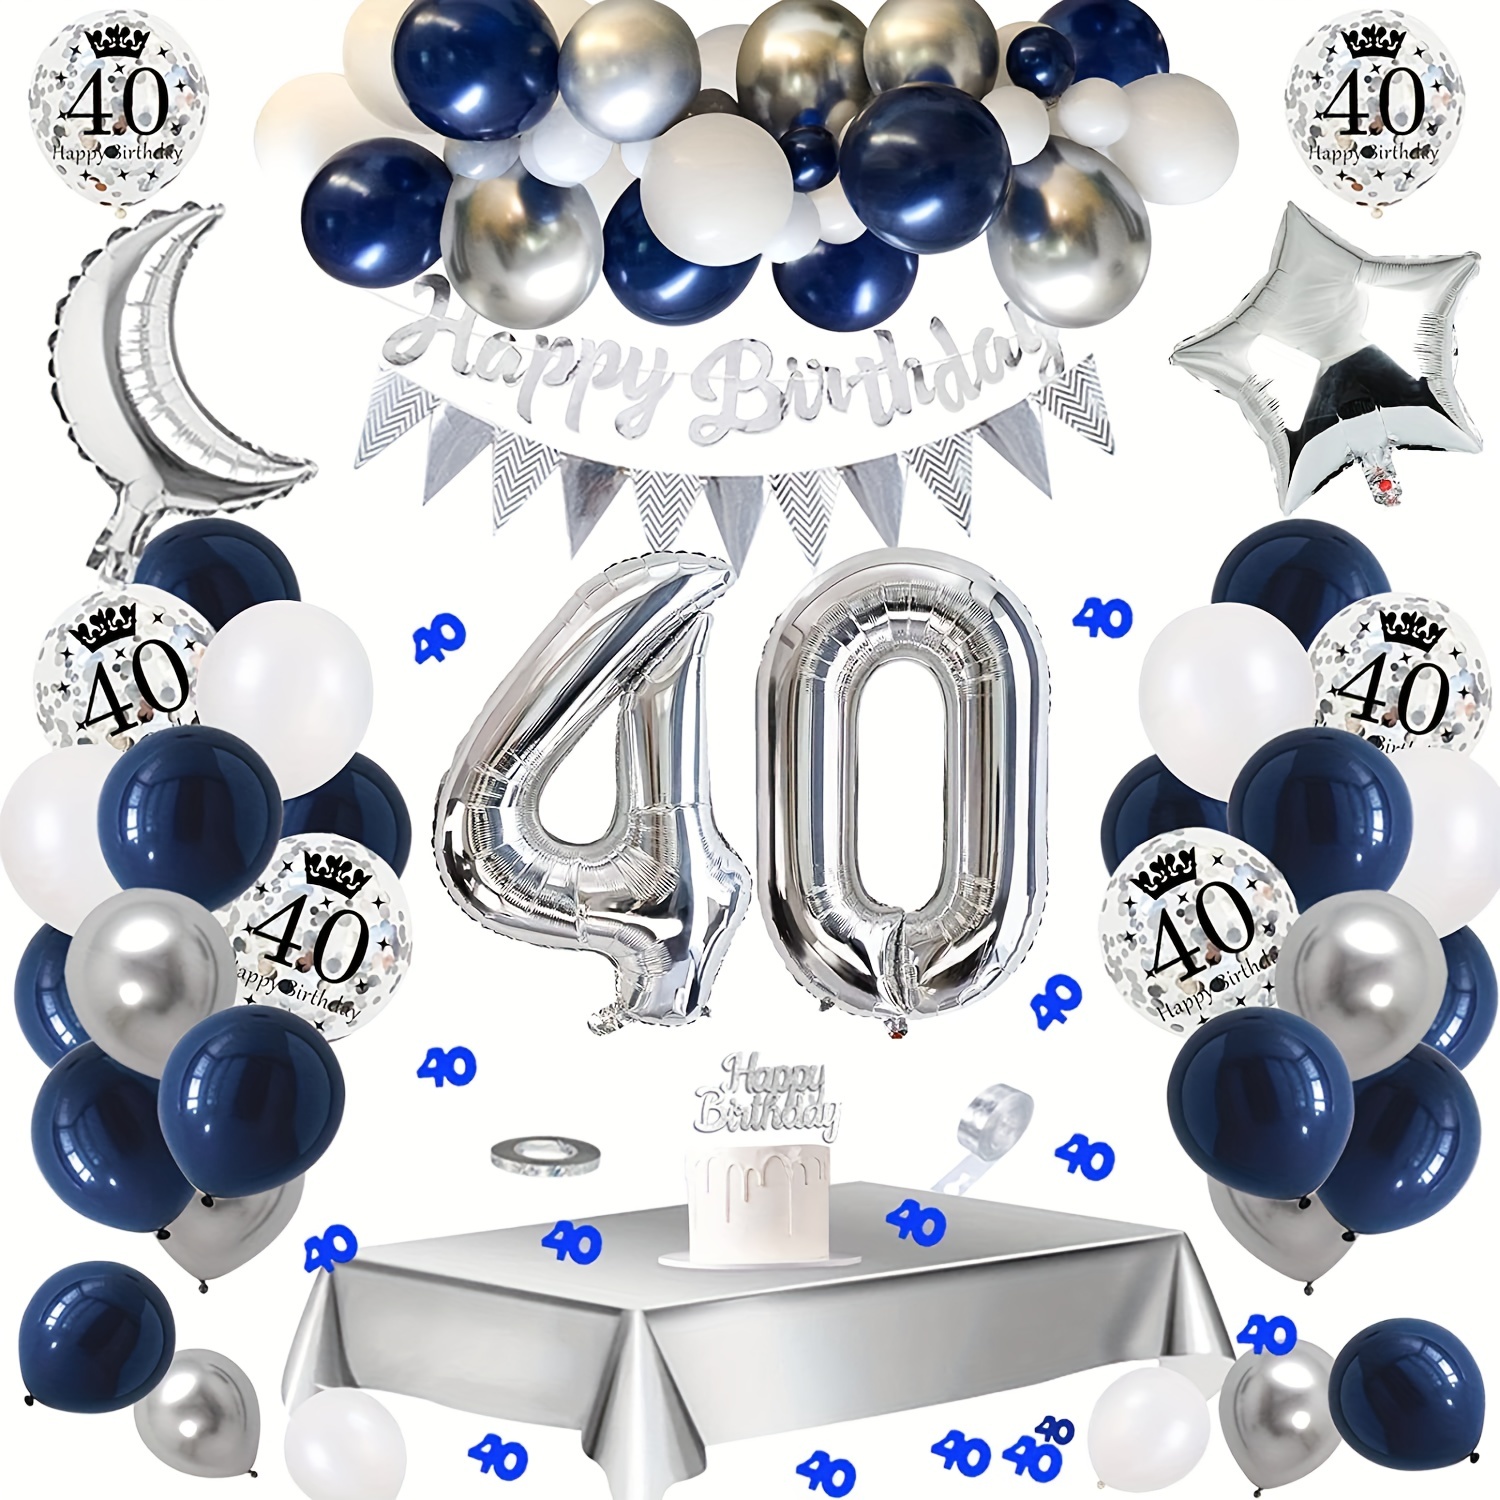 Decorazione 70 anni compleanno, Ghirlanda Palloncini 70 anni blu,  Palloncini Compleanno 70 anni uomo, 70 Arco Kit Ghirlanda Palloncini,  Ghirlanda 70